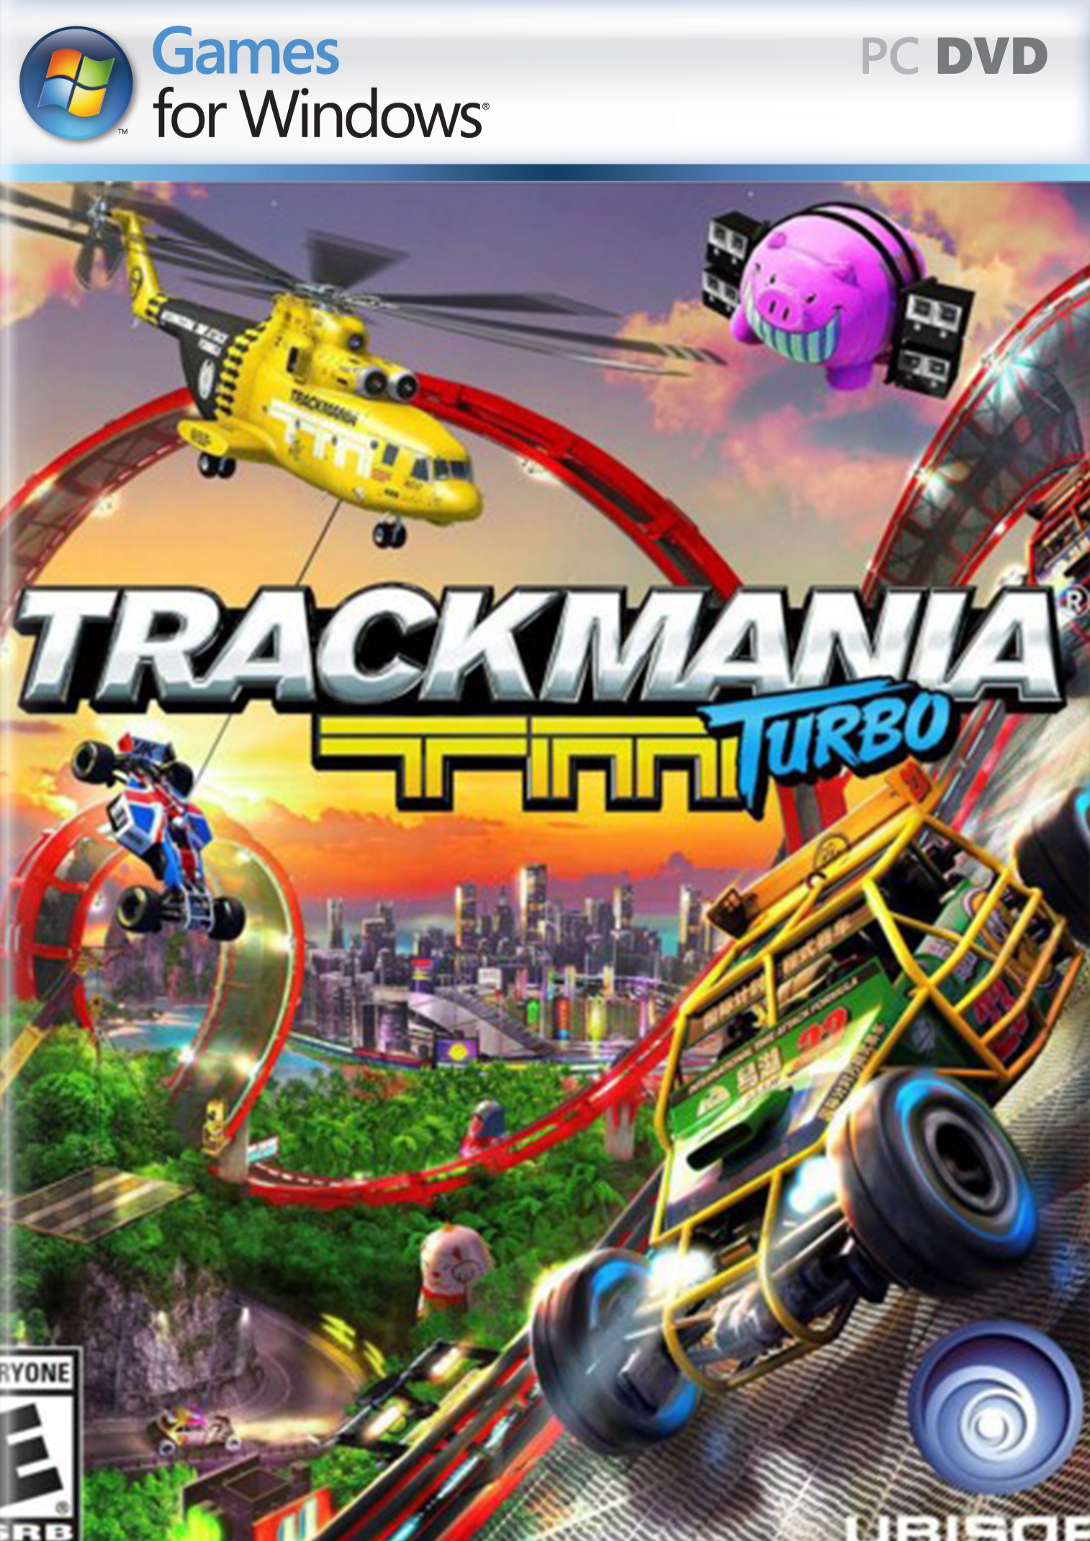 Trackmania Turbo Telecharger Gratuit Version Complete Pc à Jeux De Course Gratuit A Telecharger Pour Pc